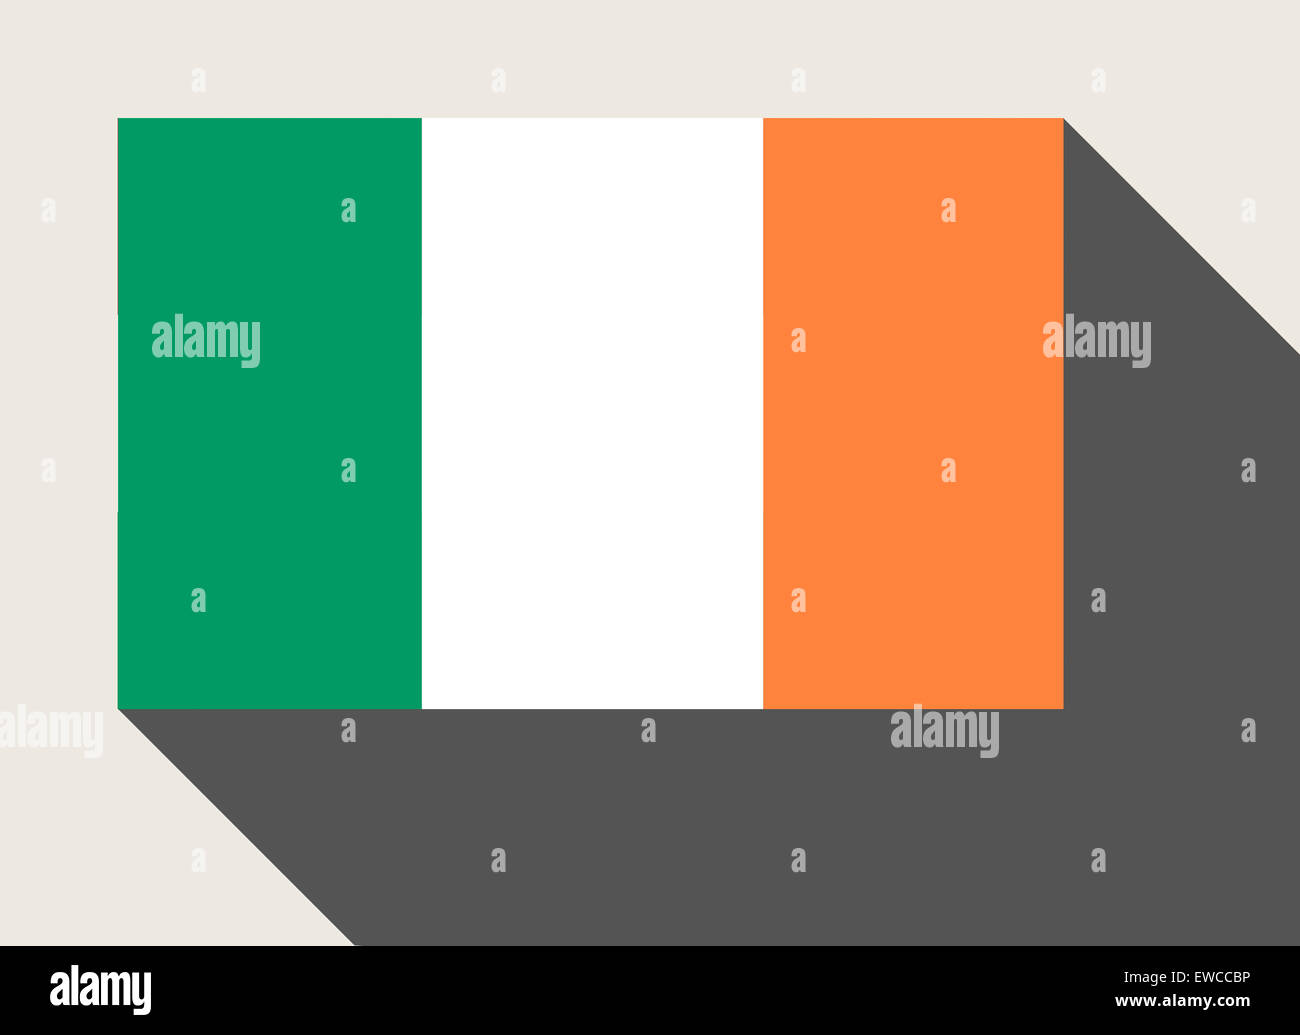 République d'Irlande drapeau dans télévision web design style. Banque D'Images